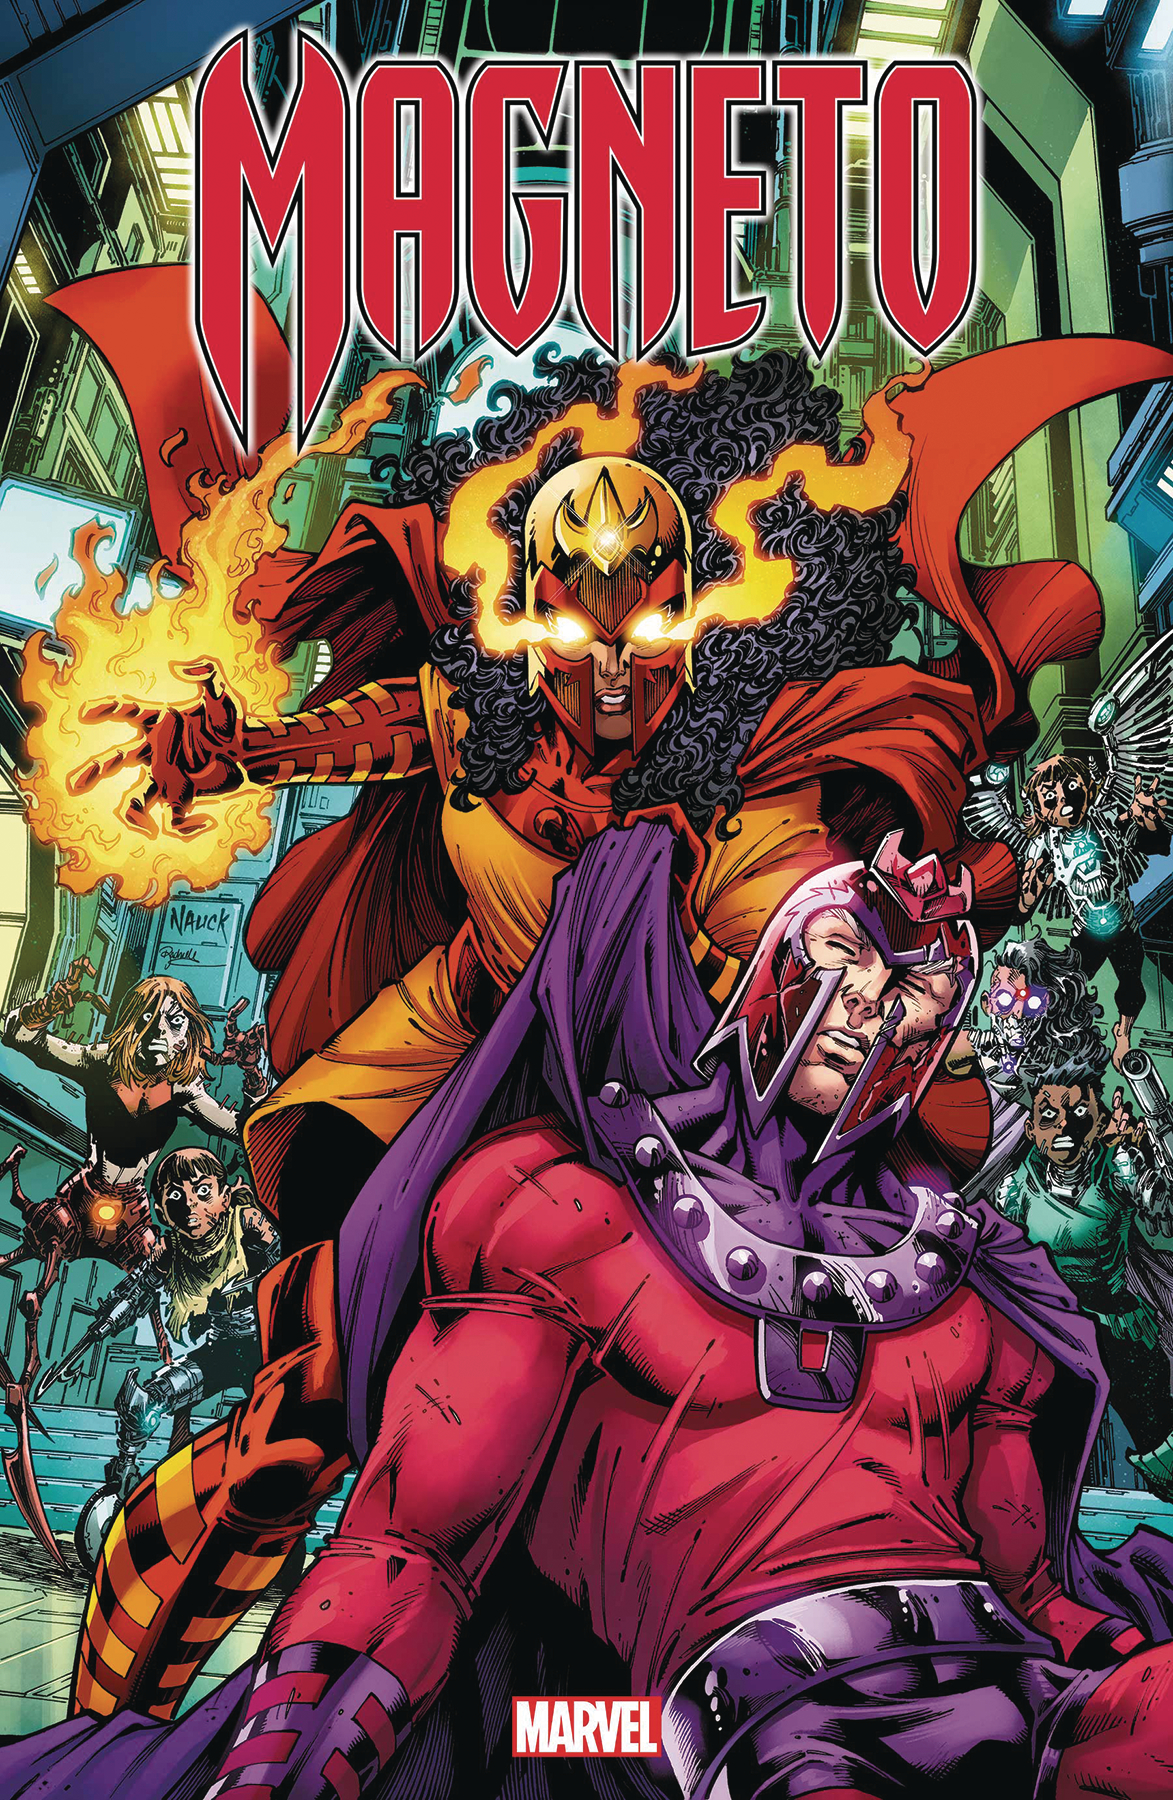 Full-Court khuyến mãi Marvel Revoltech Anime đồ chơi tàn sát Deadpool  Spider-Man Gwen Stacy nọc độc Wolverine Magneto nhân vật hành động Đội  Trưởng Mỹ đồ chơi | Lazada.vn